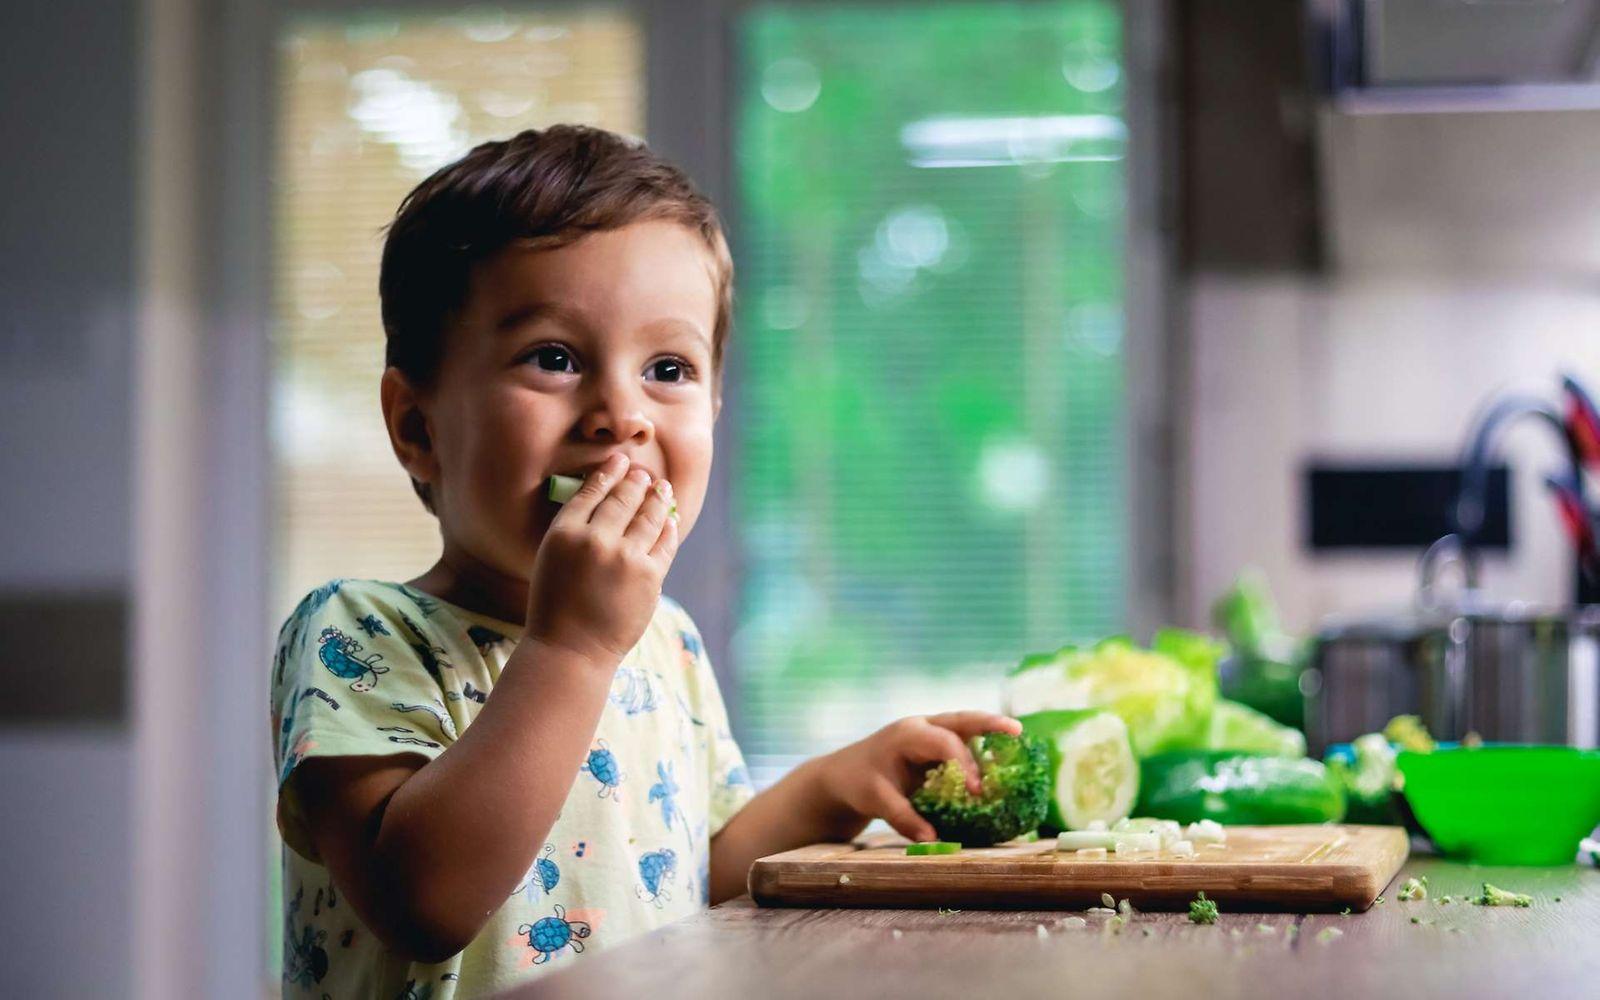 Rohes Gemüse: Kleines Kind isst Brokkoli und Zucchini